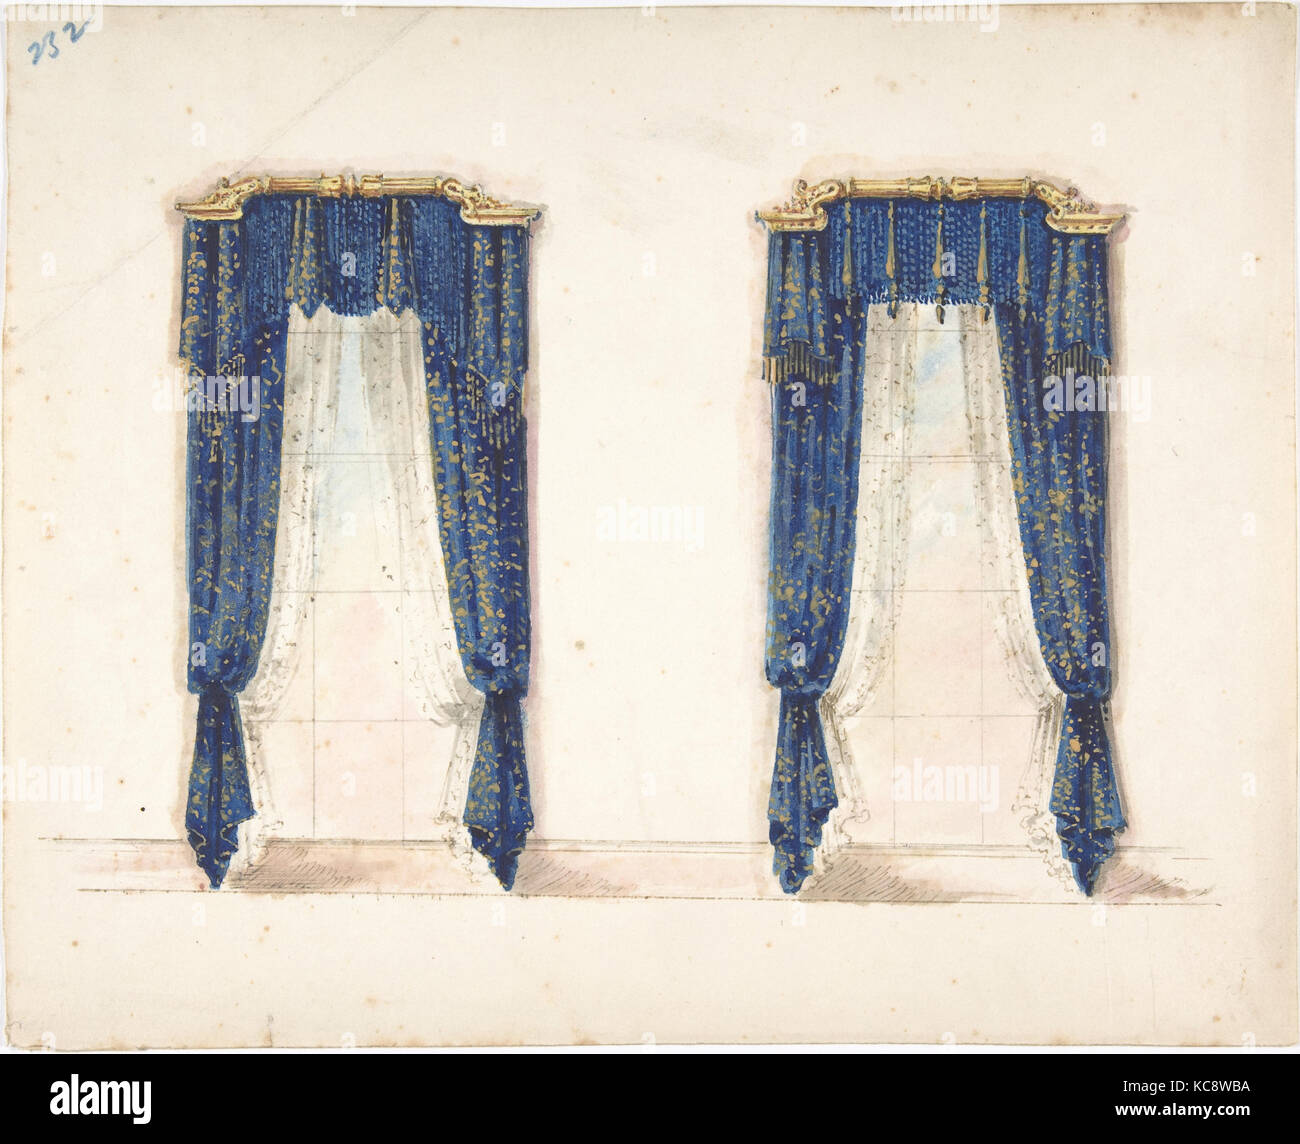 Pour la conception de rideaux bleu et or avec franges d'or et d'un fronton d'or, anonyme, britannique, 19ème siècle, début du xixe siècle Banque D'Images